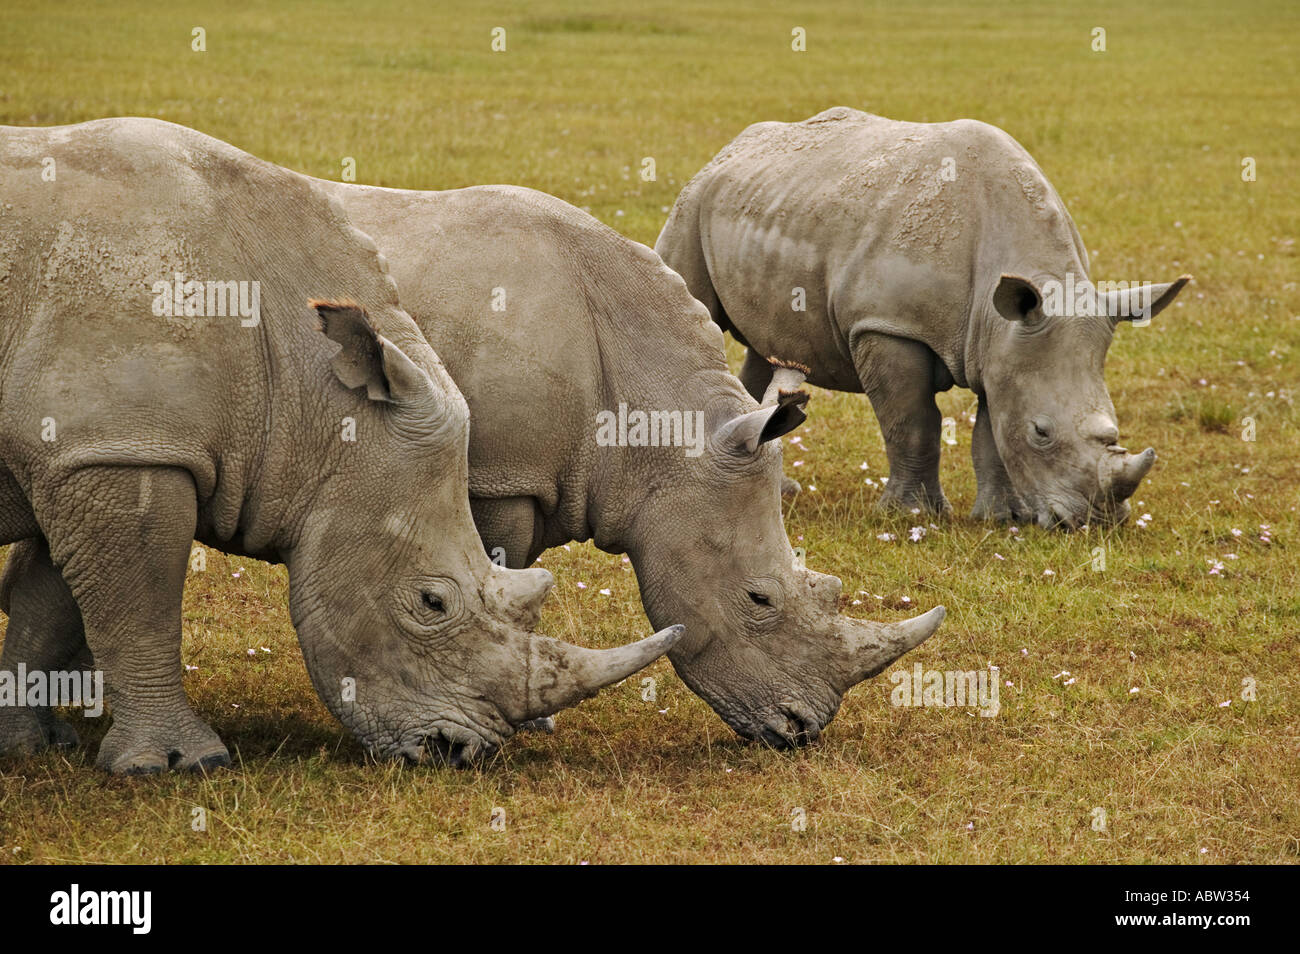 Le rhinocéros blanc Ceratotherium simum le pâturage qu'ils préfèrent les zones d'herbe courte Parc national du Lac Nakuru au Kenya Banque D'Images